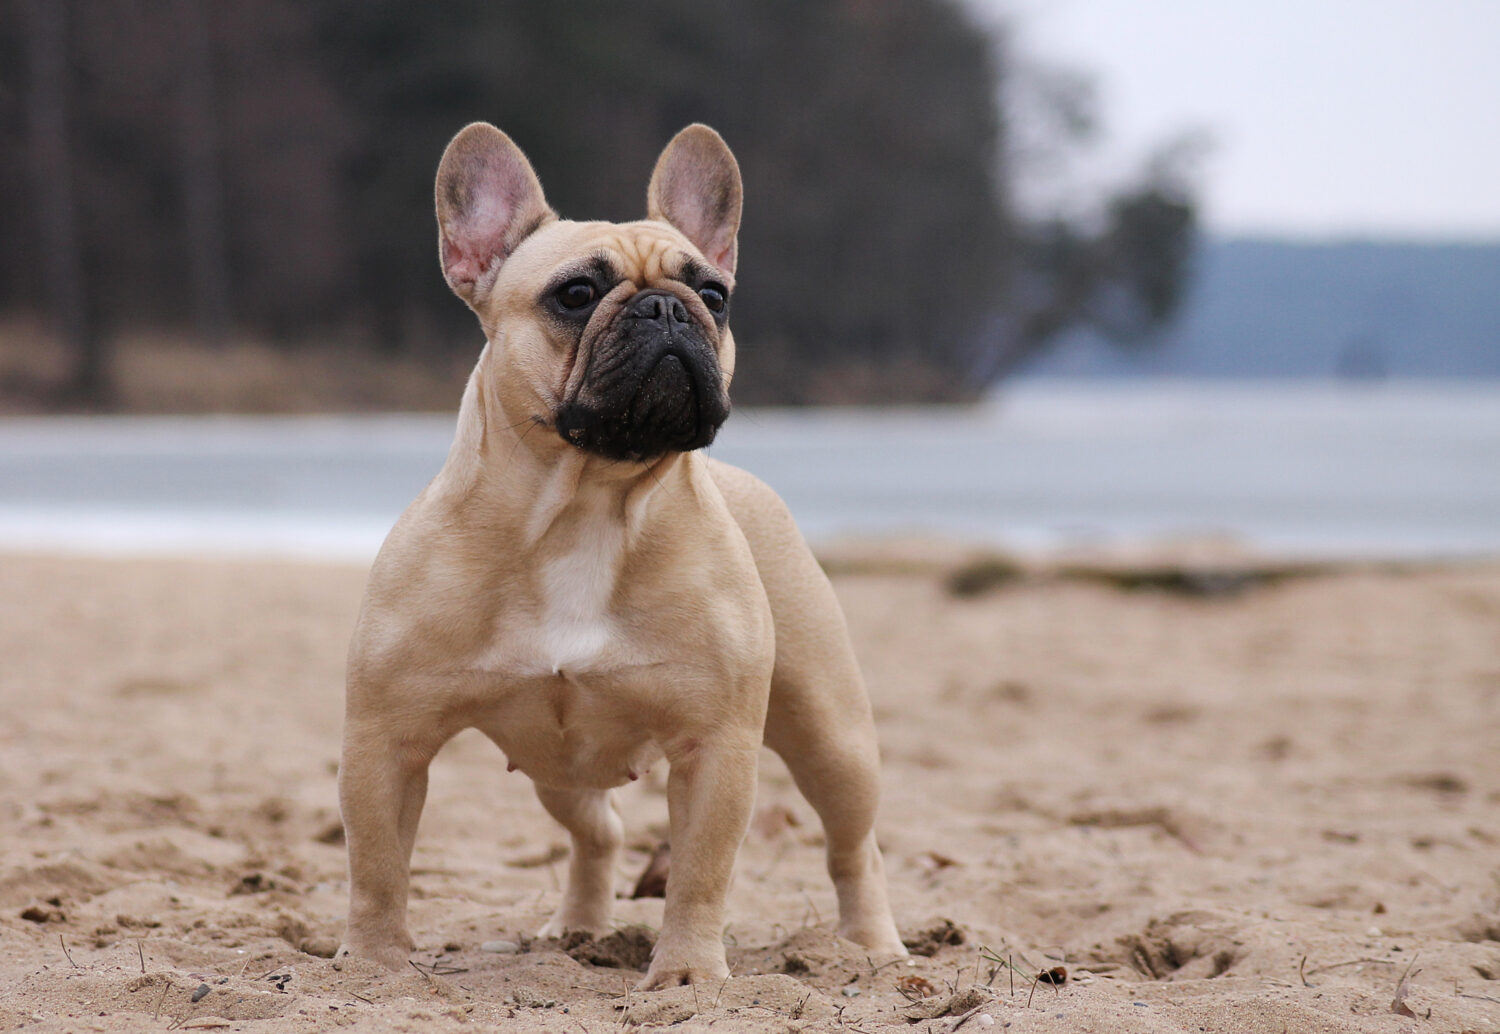 Französische Bulldogge - Steckbrief, Charakter, Wesen und Haltung